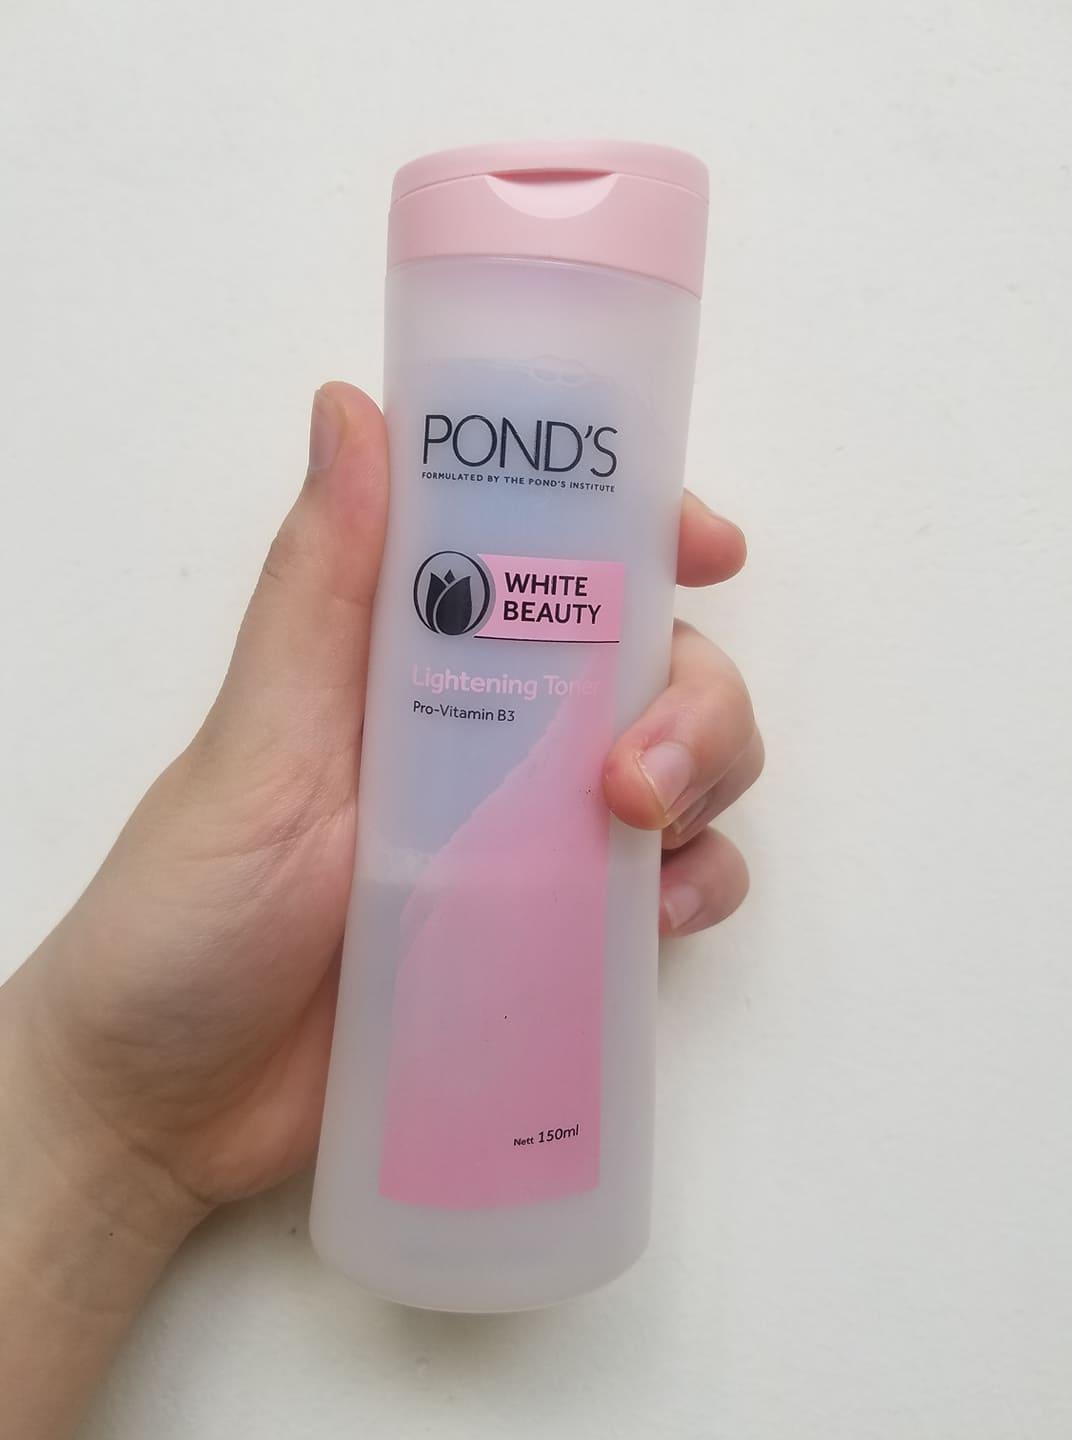 Bao bì của nước hoa hồng Pond's White Beauty (nguồn: BlogAnChoi)